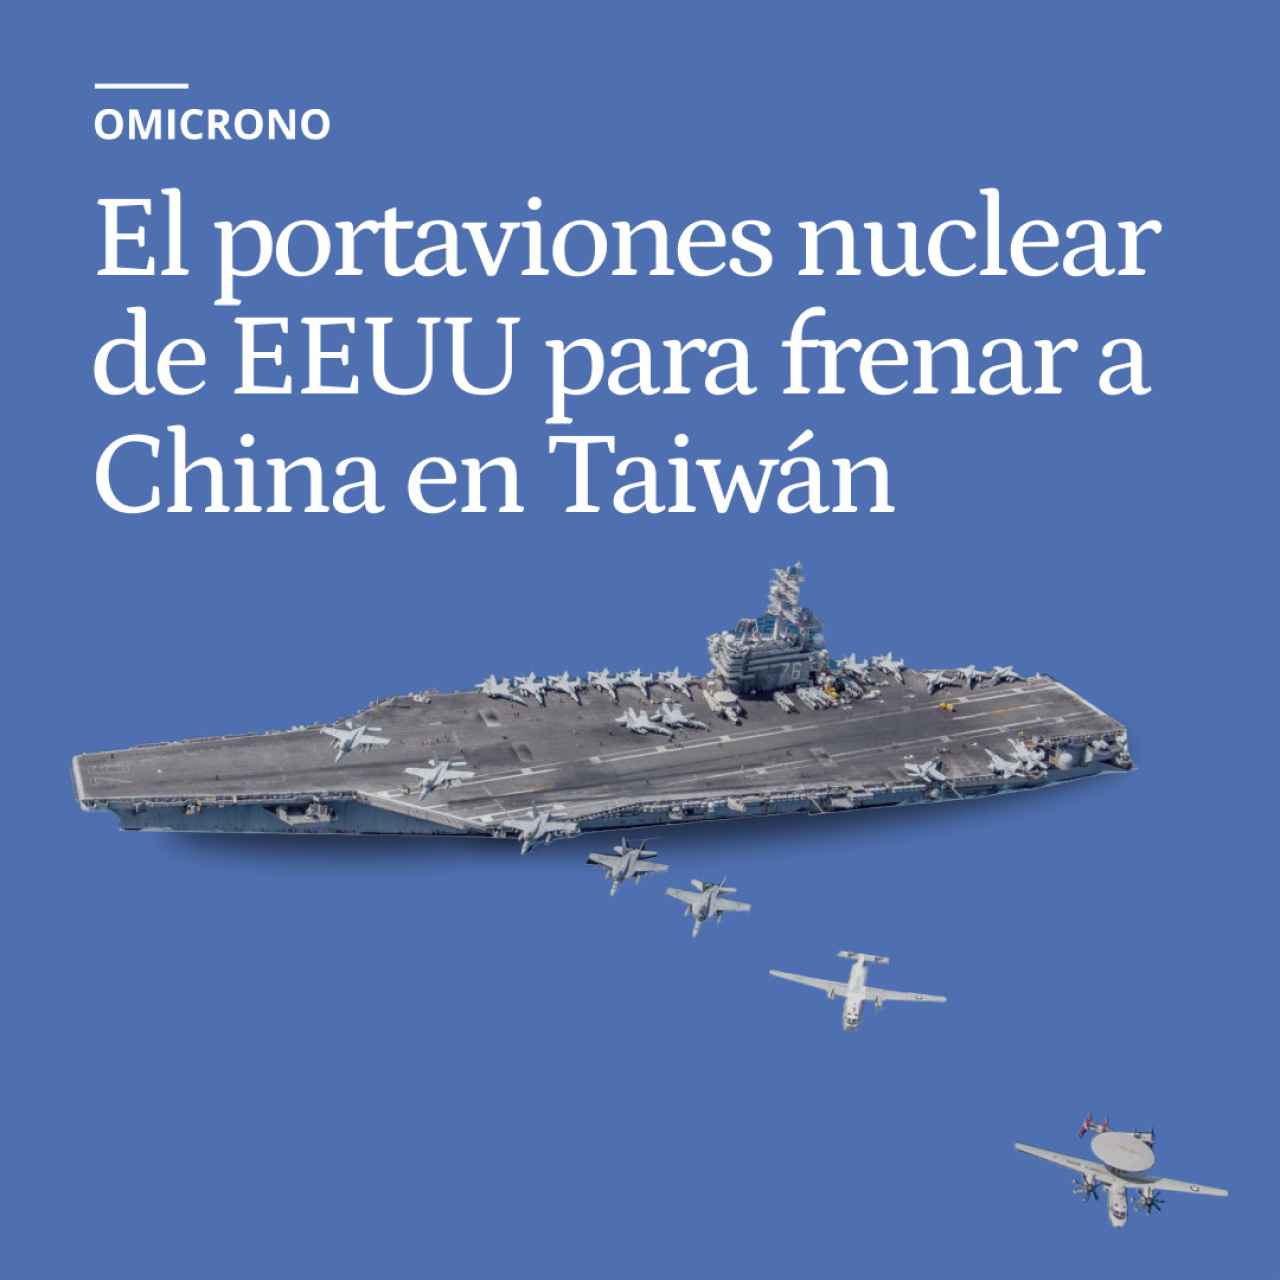 El portaviones nuclear de EEUU para frenar a China en Taiwán: 130 cazas y 25 años sin parar a repostar